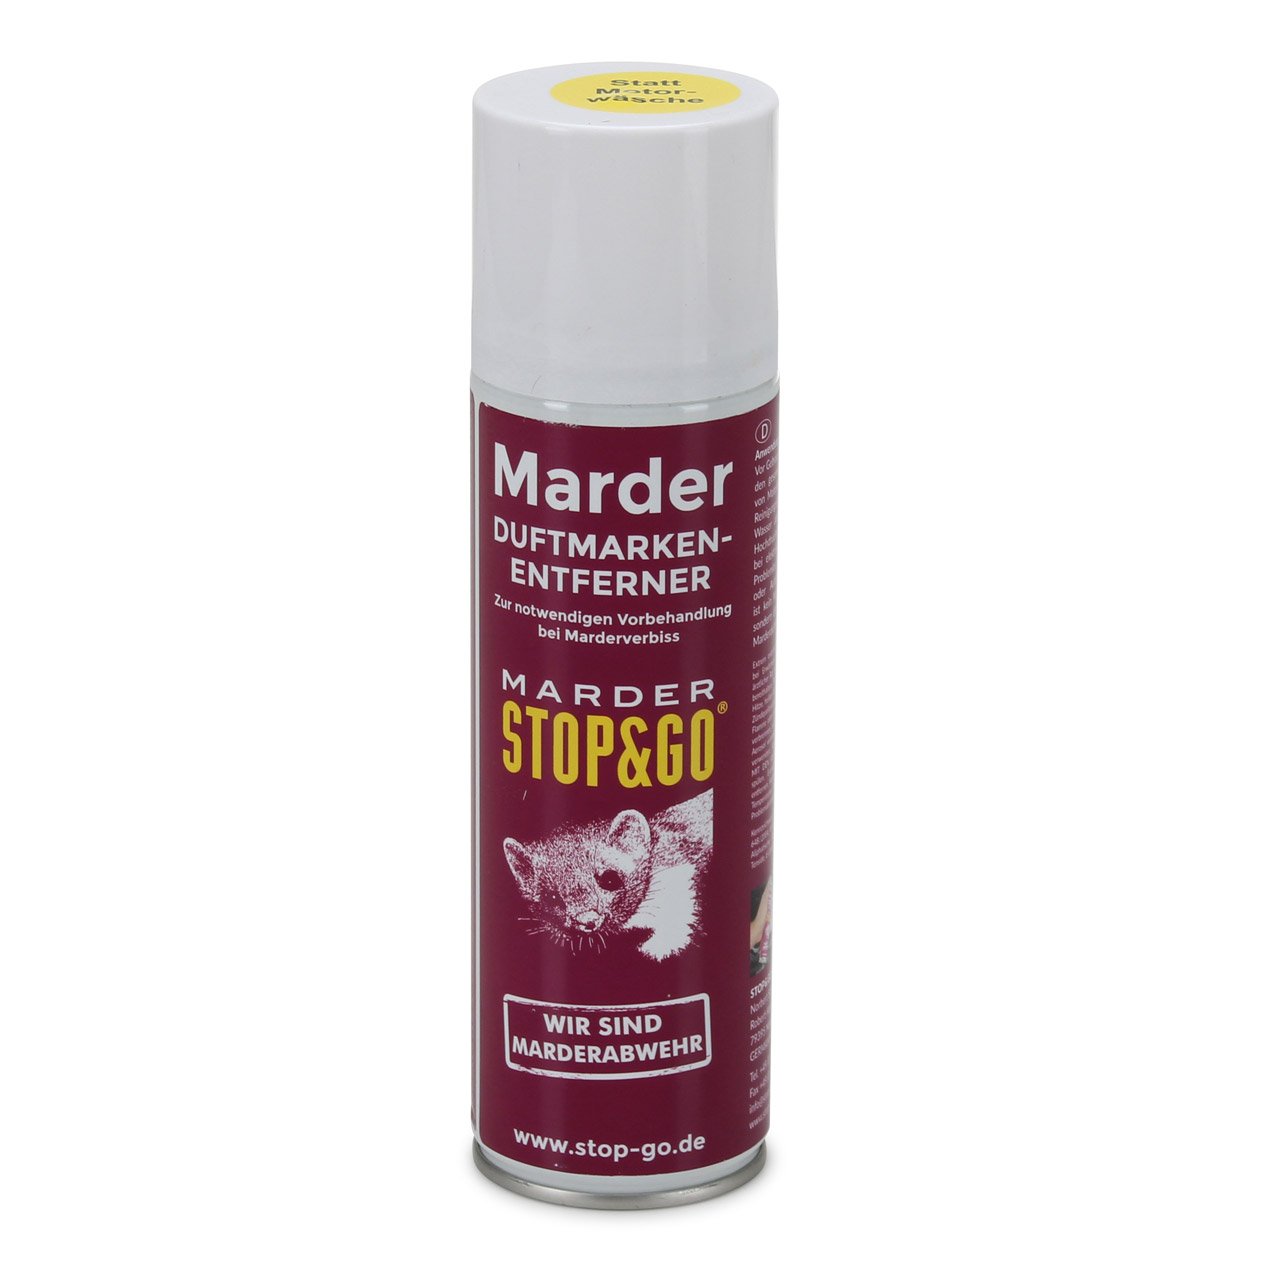 STOP & GO Marderabwehr Duftmarken-Entferner Spray Marderschreck 300ml 07503